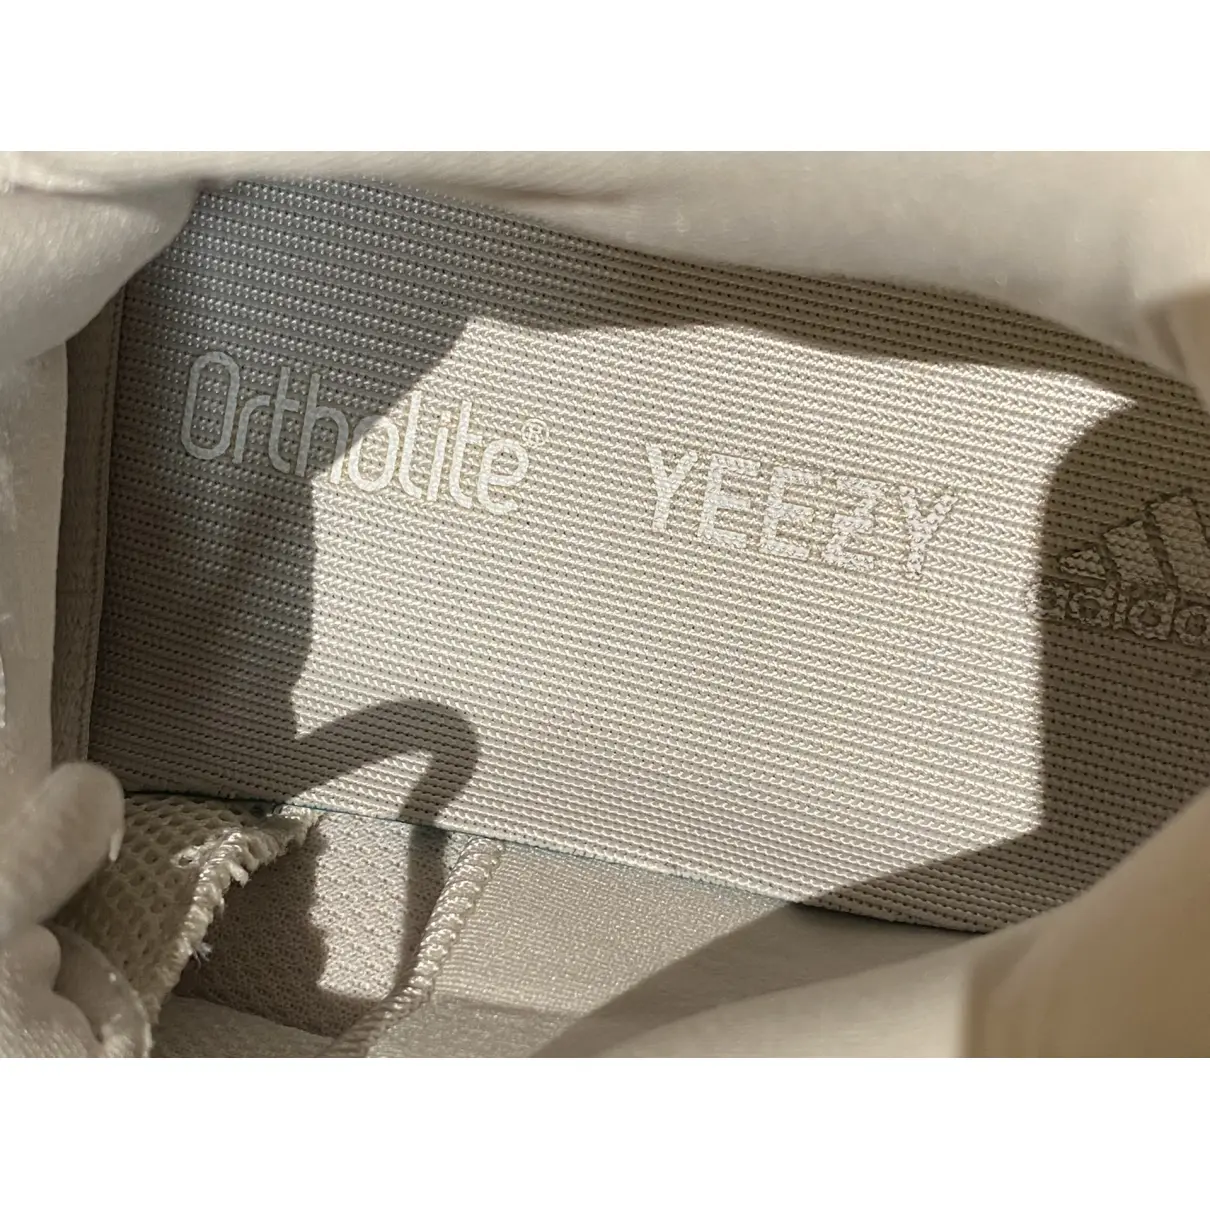 500 trainers Yeezy x Adidas